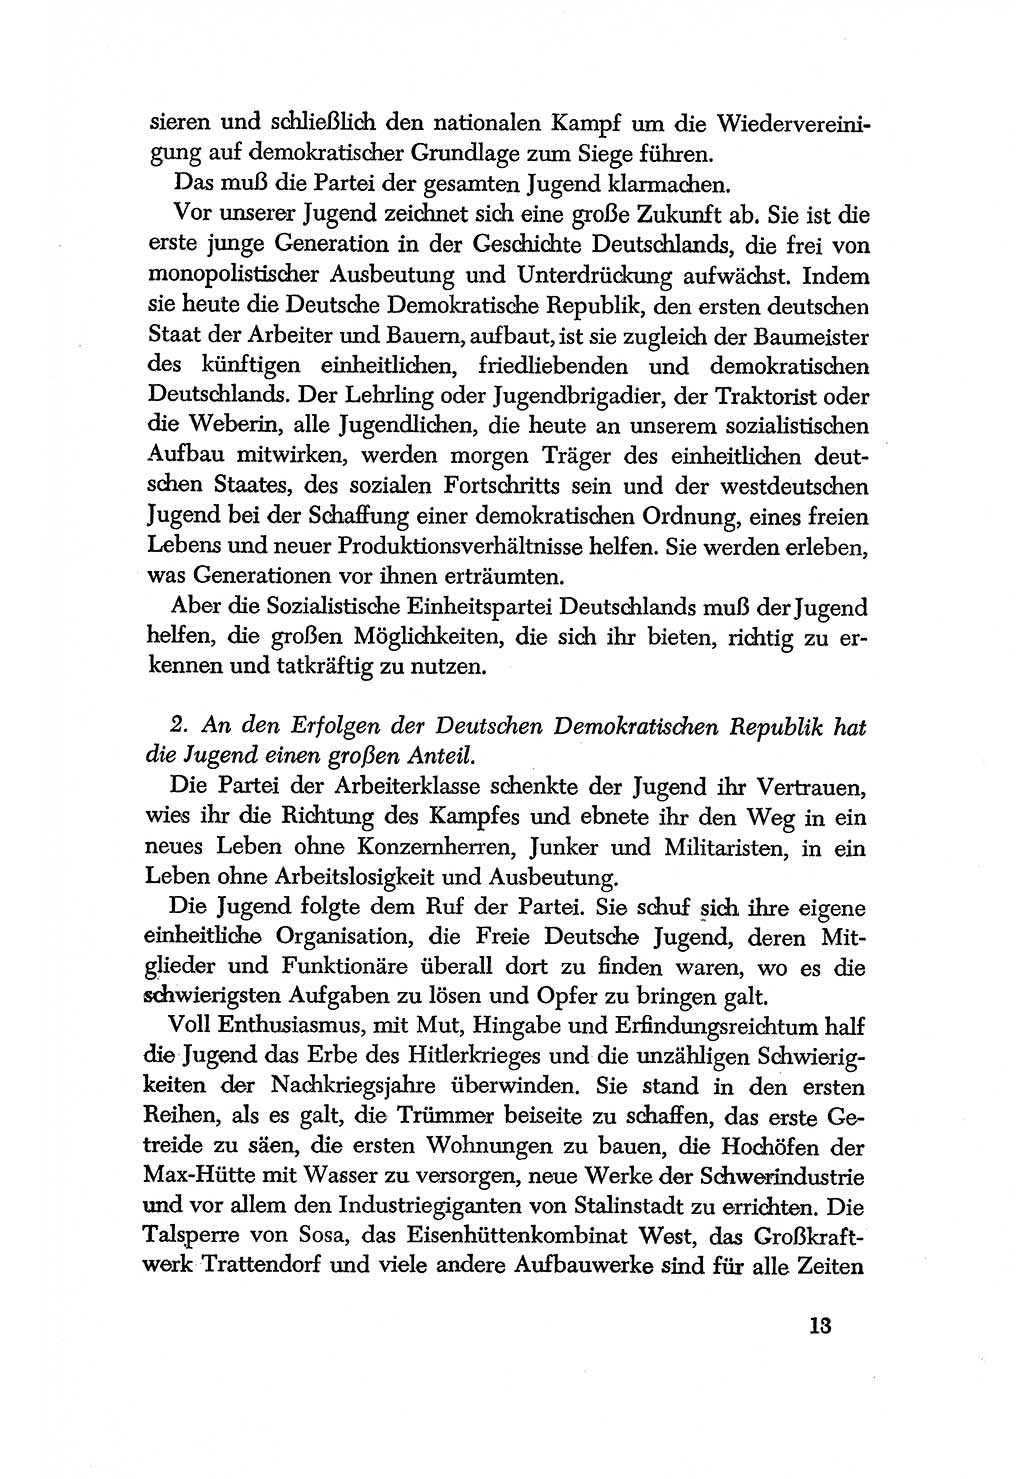 Dokumente der Sozialistischen Einheitspartei Deutschlands (SED) [Deutsche Demokratische Republik (DDR)] 1956-1957, Seite 13 (Dok. SED DDR 1956-1957, S. 13)